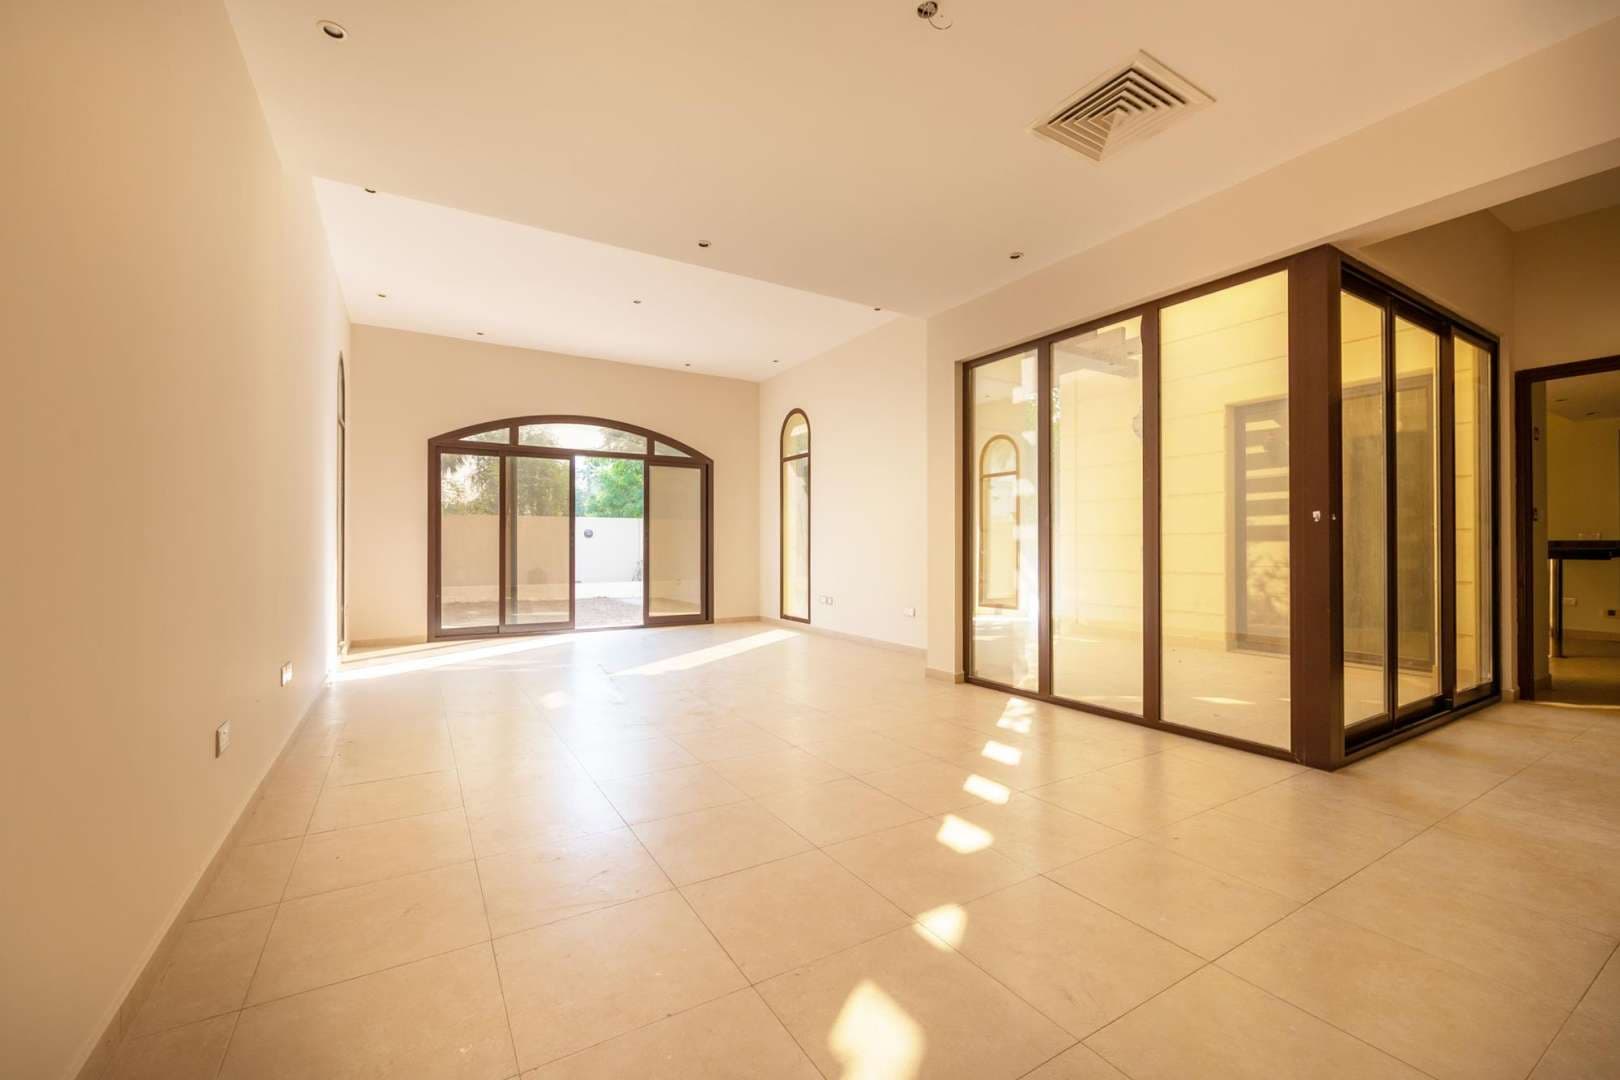 4 Bedroom Townhouse For Rent Al Salam Lp05145 232b8705532a4600.jpg